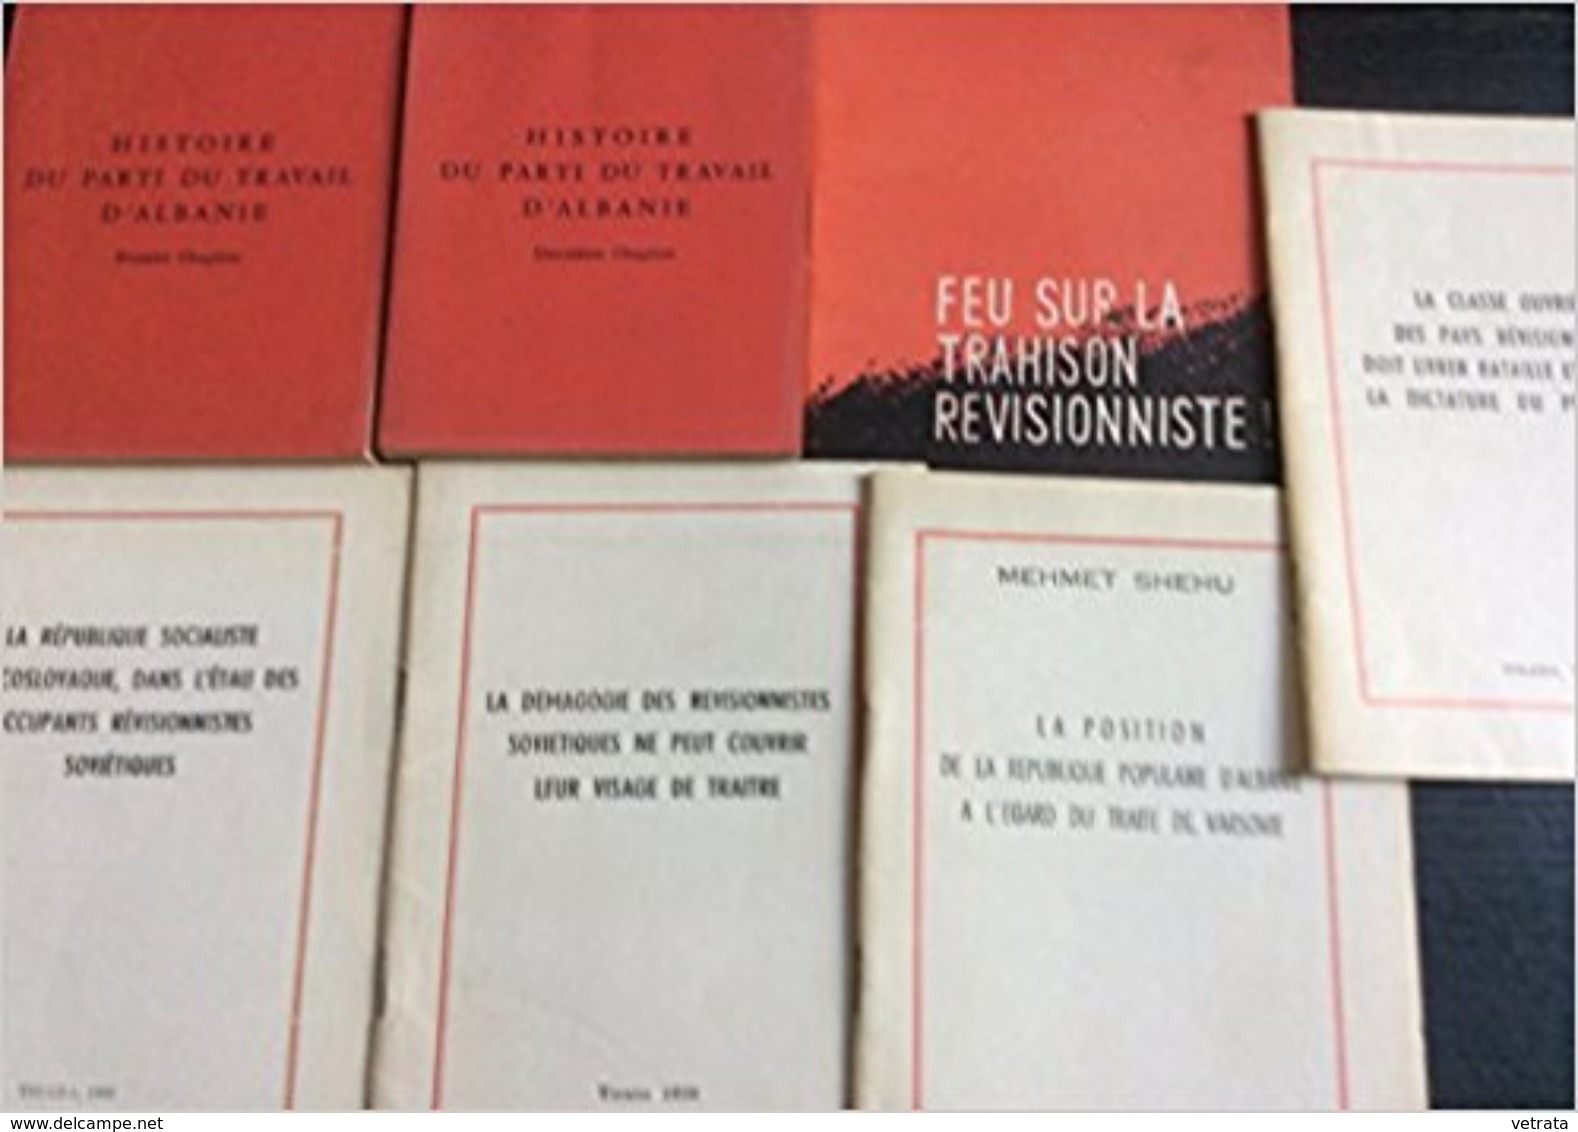 ALBANIE : Lot Composé D’un Livre En Deux Volumes-5 Brochures-4 Revues & 8 Numéros D’ATA - Lots De Plusieurs Livres